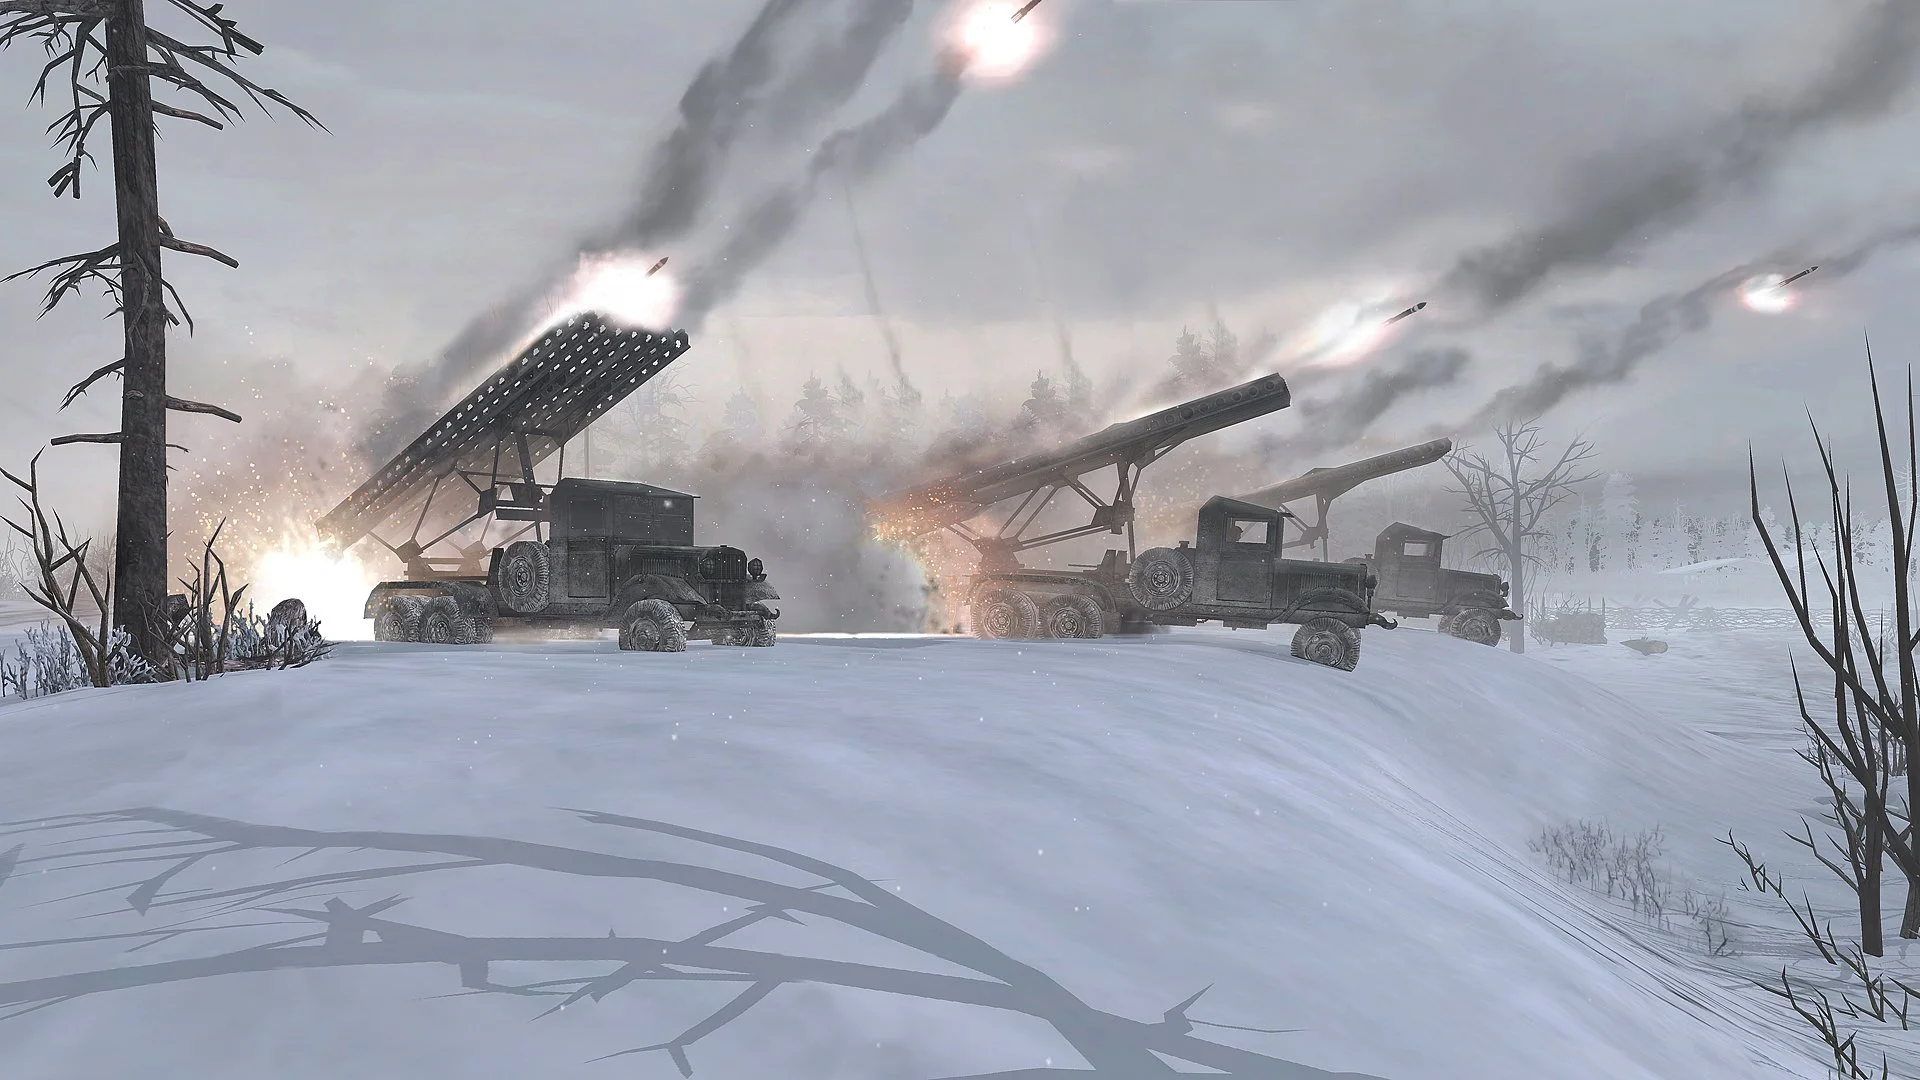 Залпа отделения ракетной артиллерии «Катюша» достаточно, чтобы сравнять с землей большинство вражеских соединений.